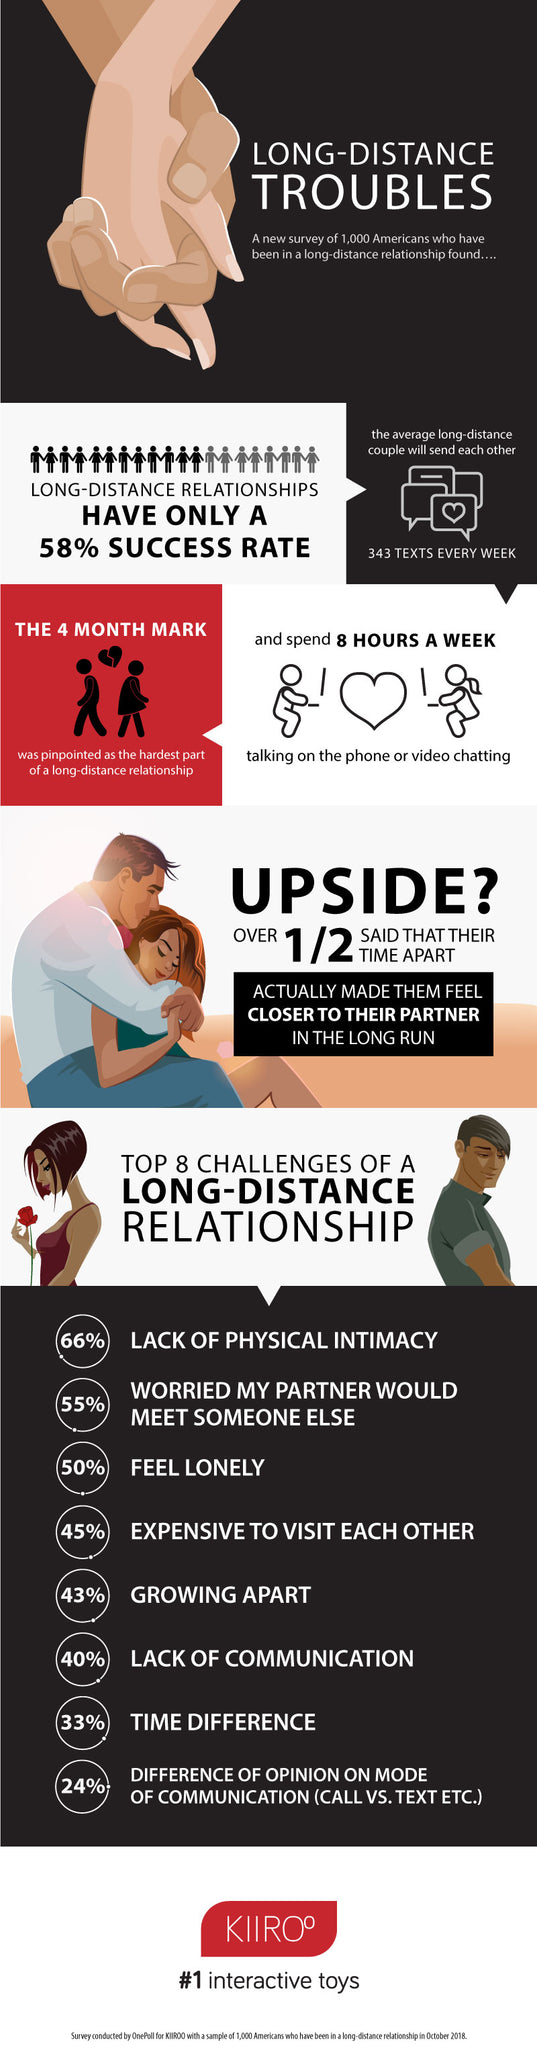 long-distance relationship challenges kiiroo